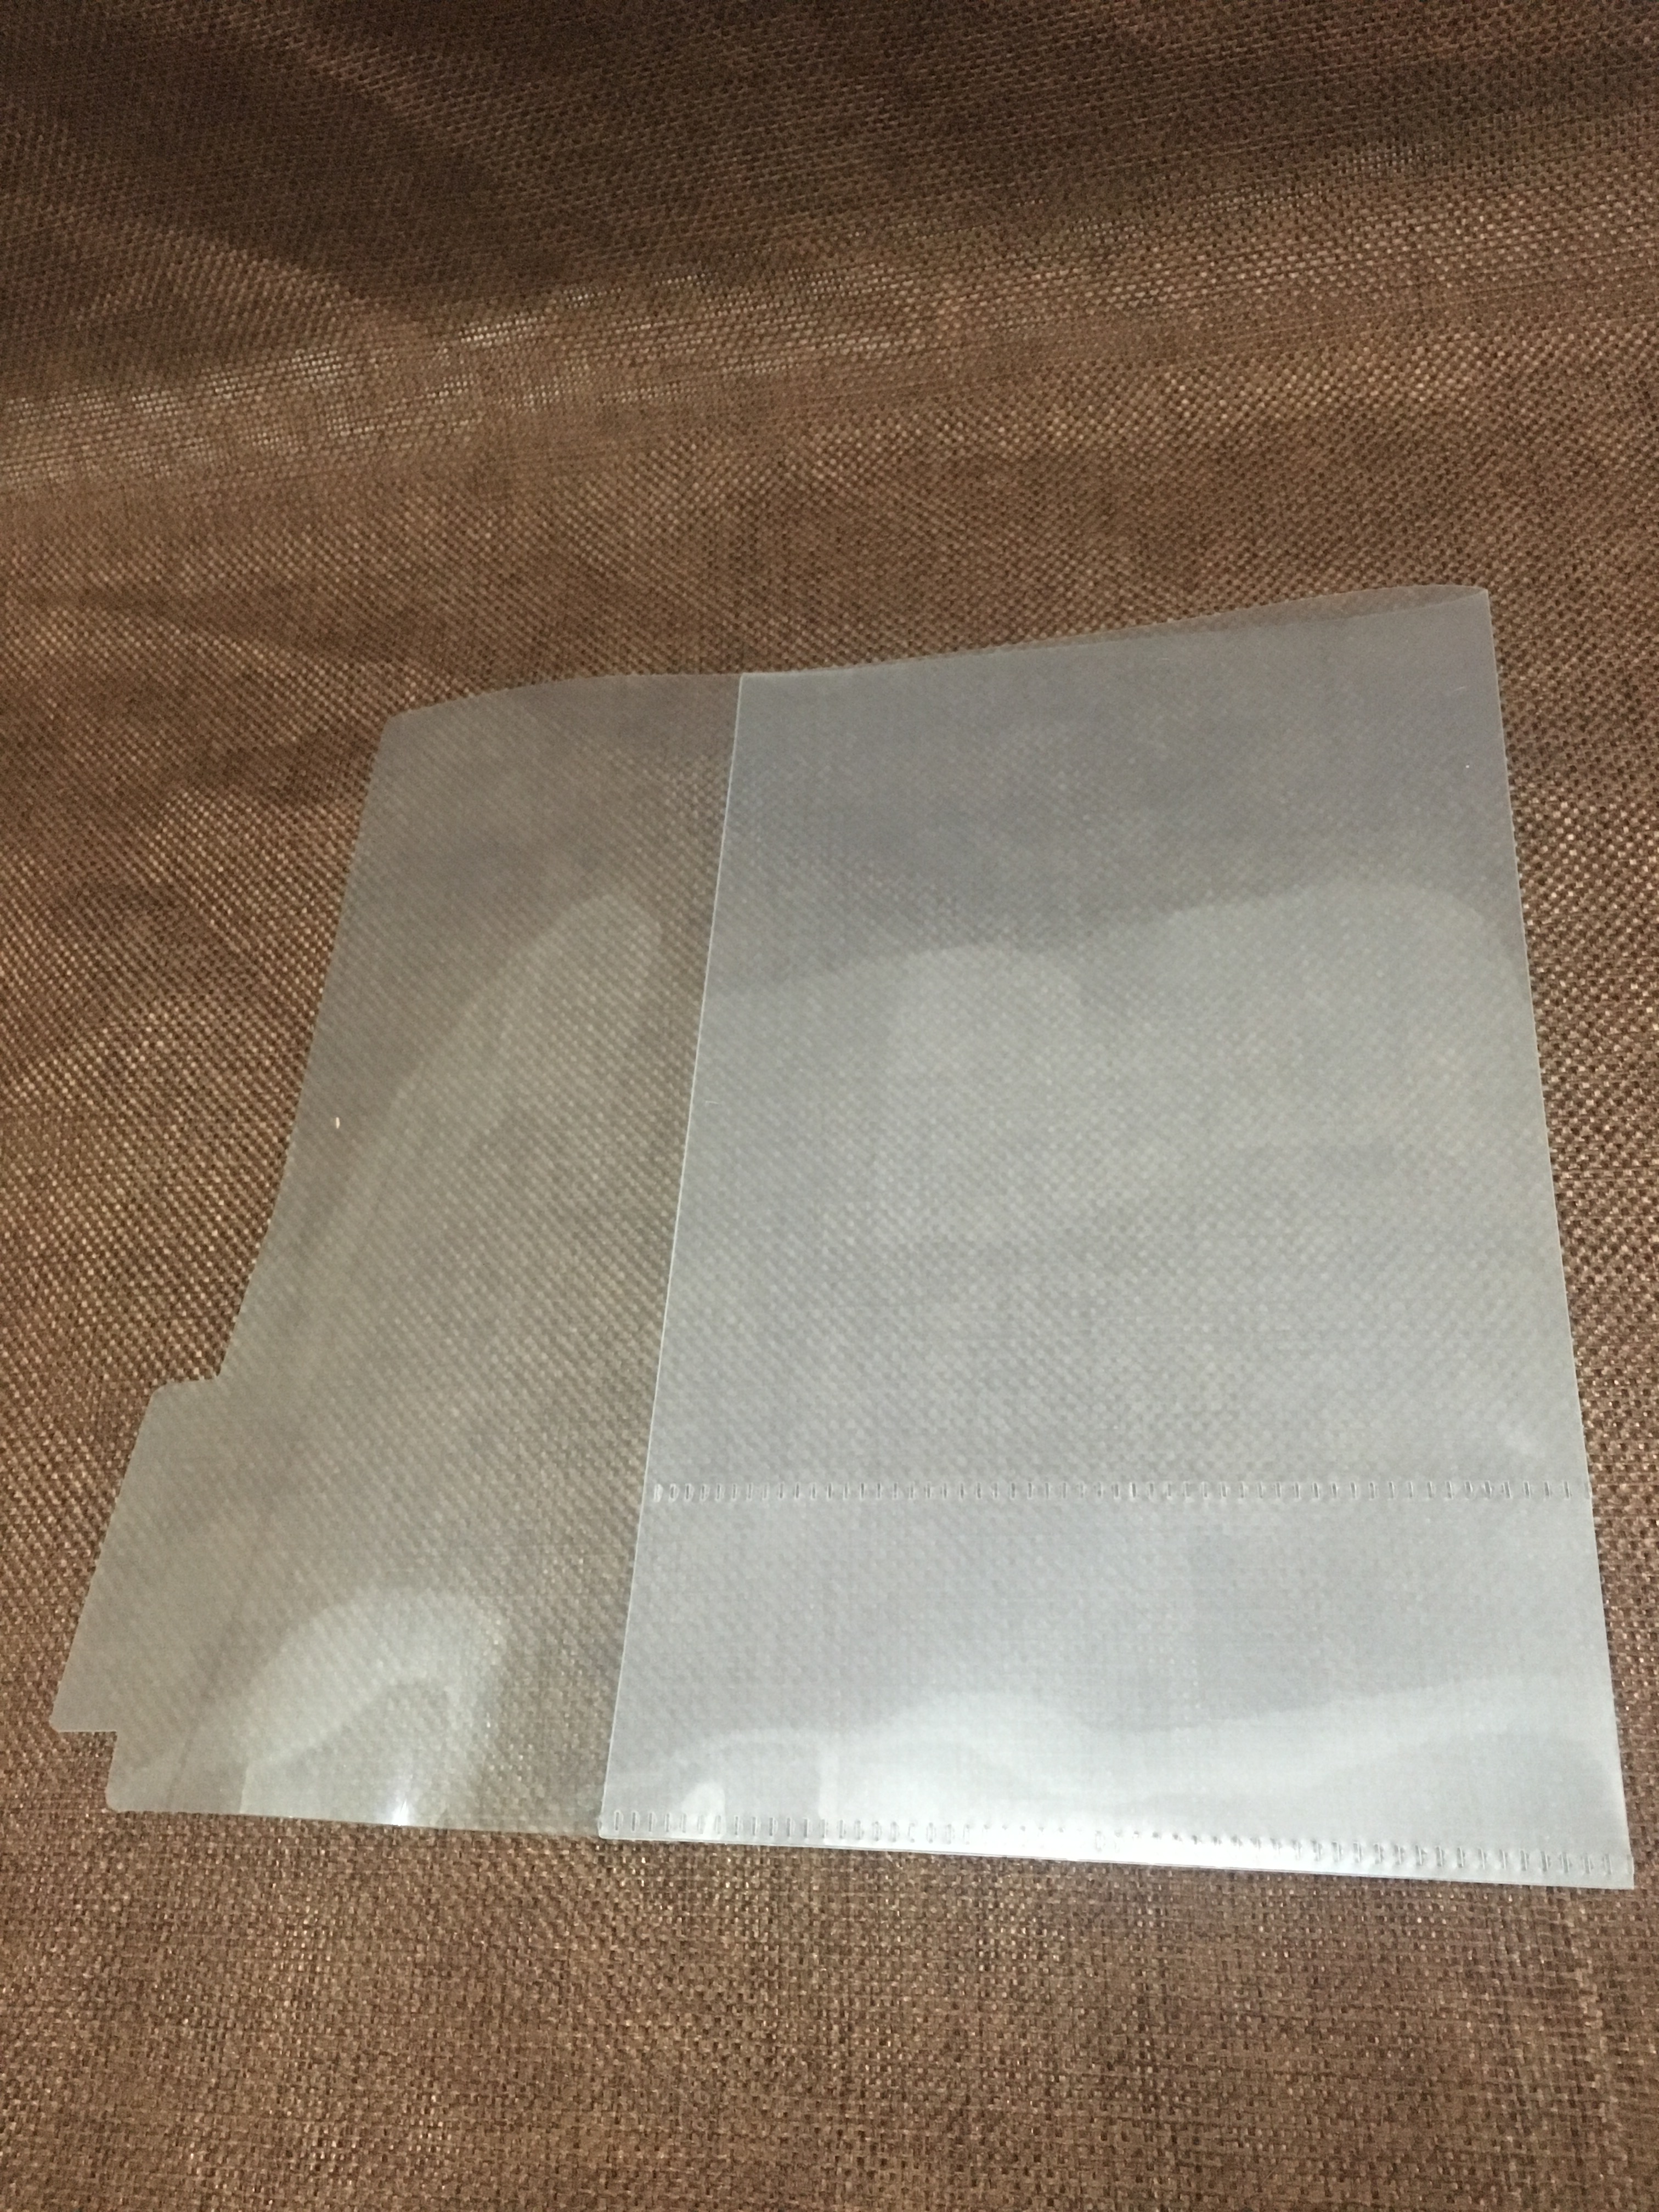 PP磨砂塑料片书套加工A4异形可定制透明磨砂片均可订制工厂直销价格优惠